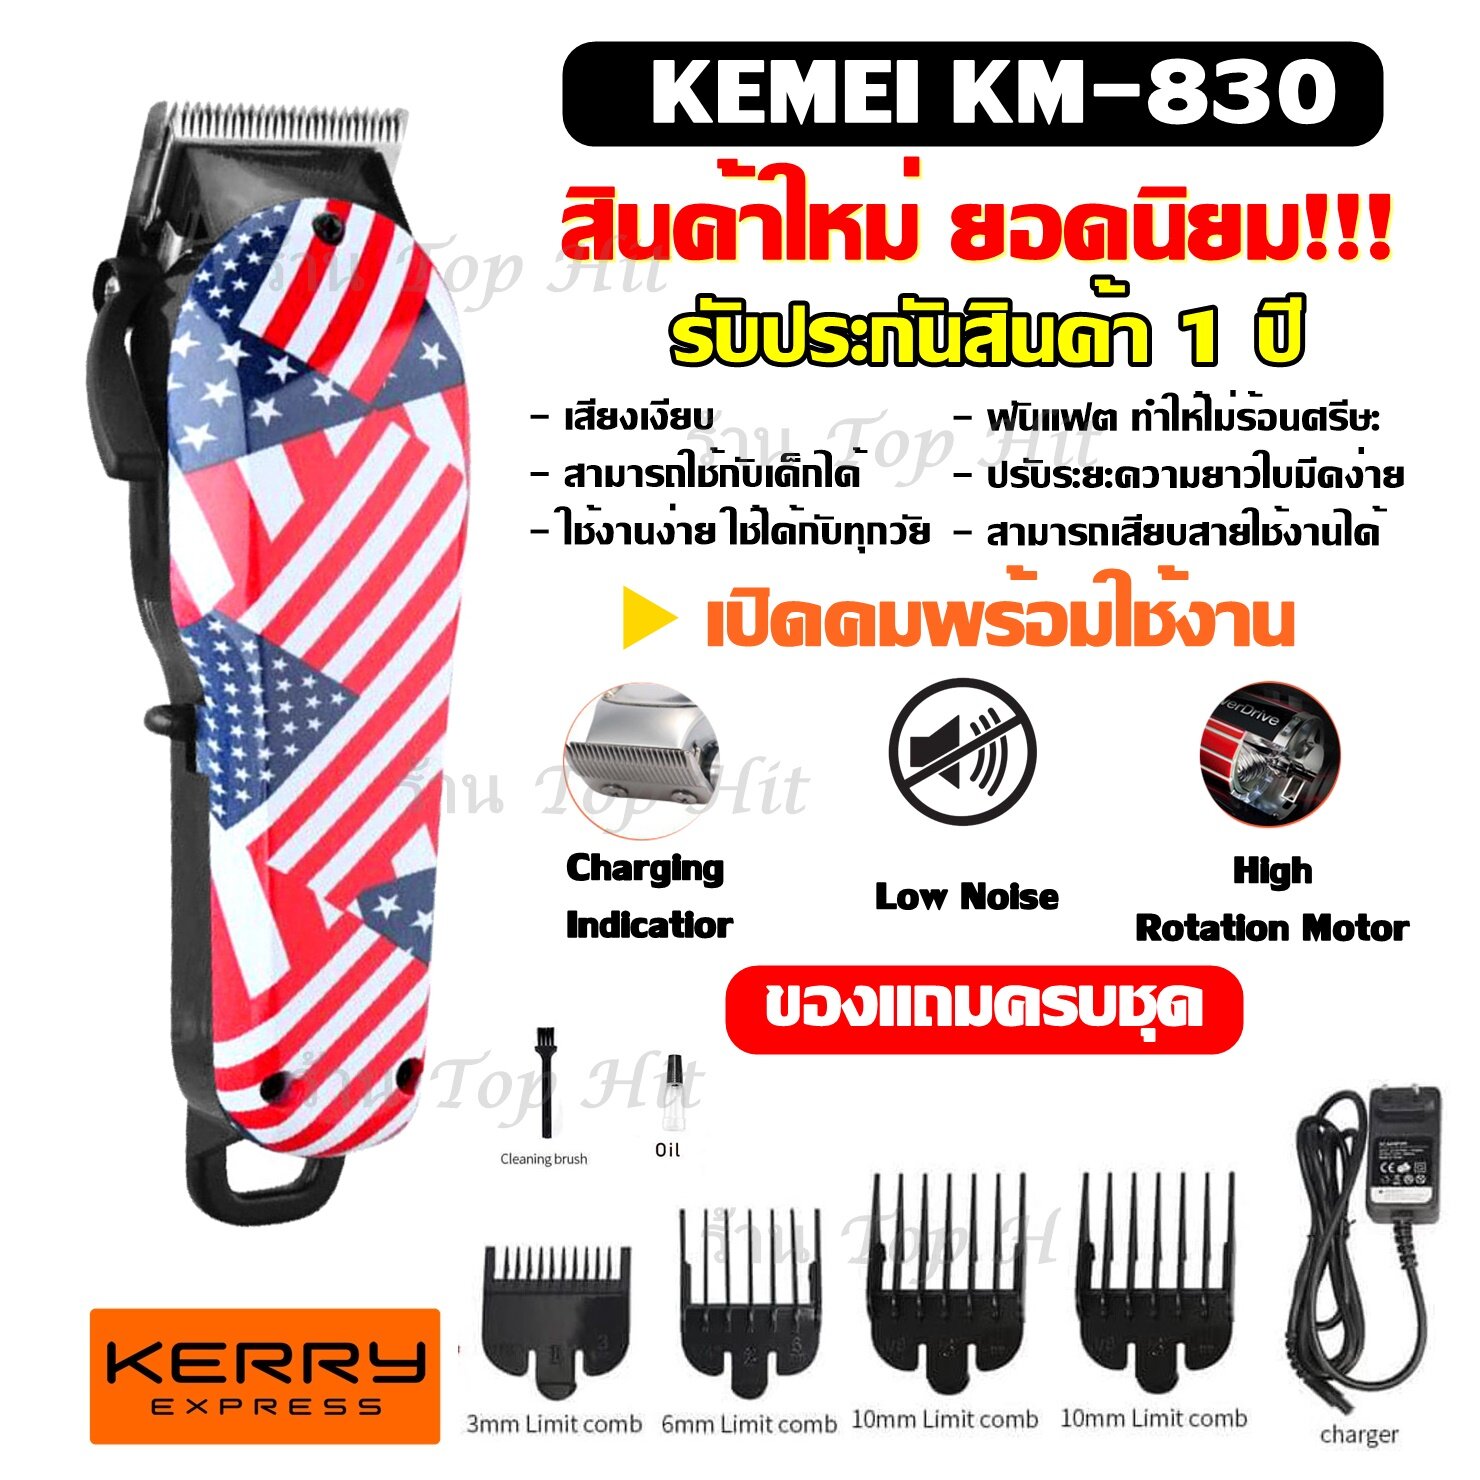 Top Price พร้อมส่ง!!! ปัตตาเลี่ยนตัดผม รุ่นใหม่ Kemei-830 ( Km830 ) / KM831 KM-831 ปัตตาเลี่ยนไร้สาย ปัตตาเลี่ยนตัดผมมืออาชีพไร้สาย ลายธงชาติ แบตตาเลียน